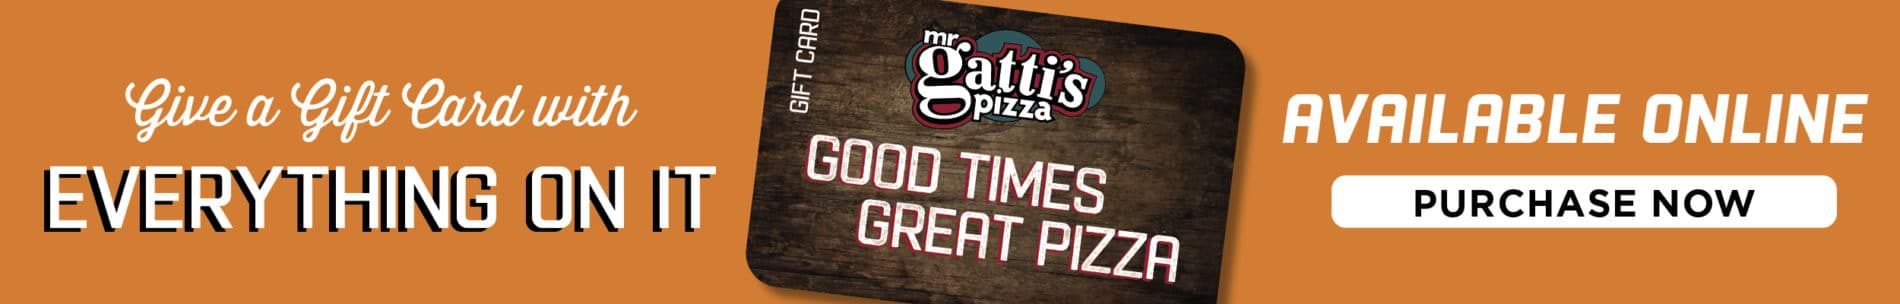 Mr Gatti's Pizza Mr Gatti's Pizza 